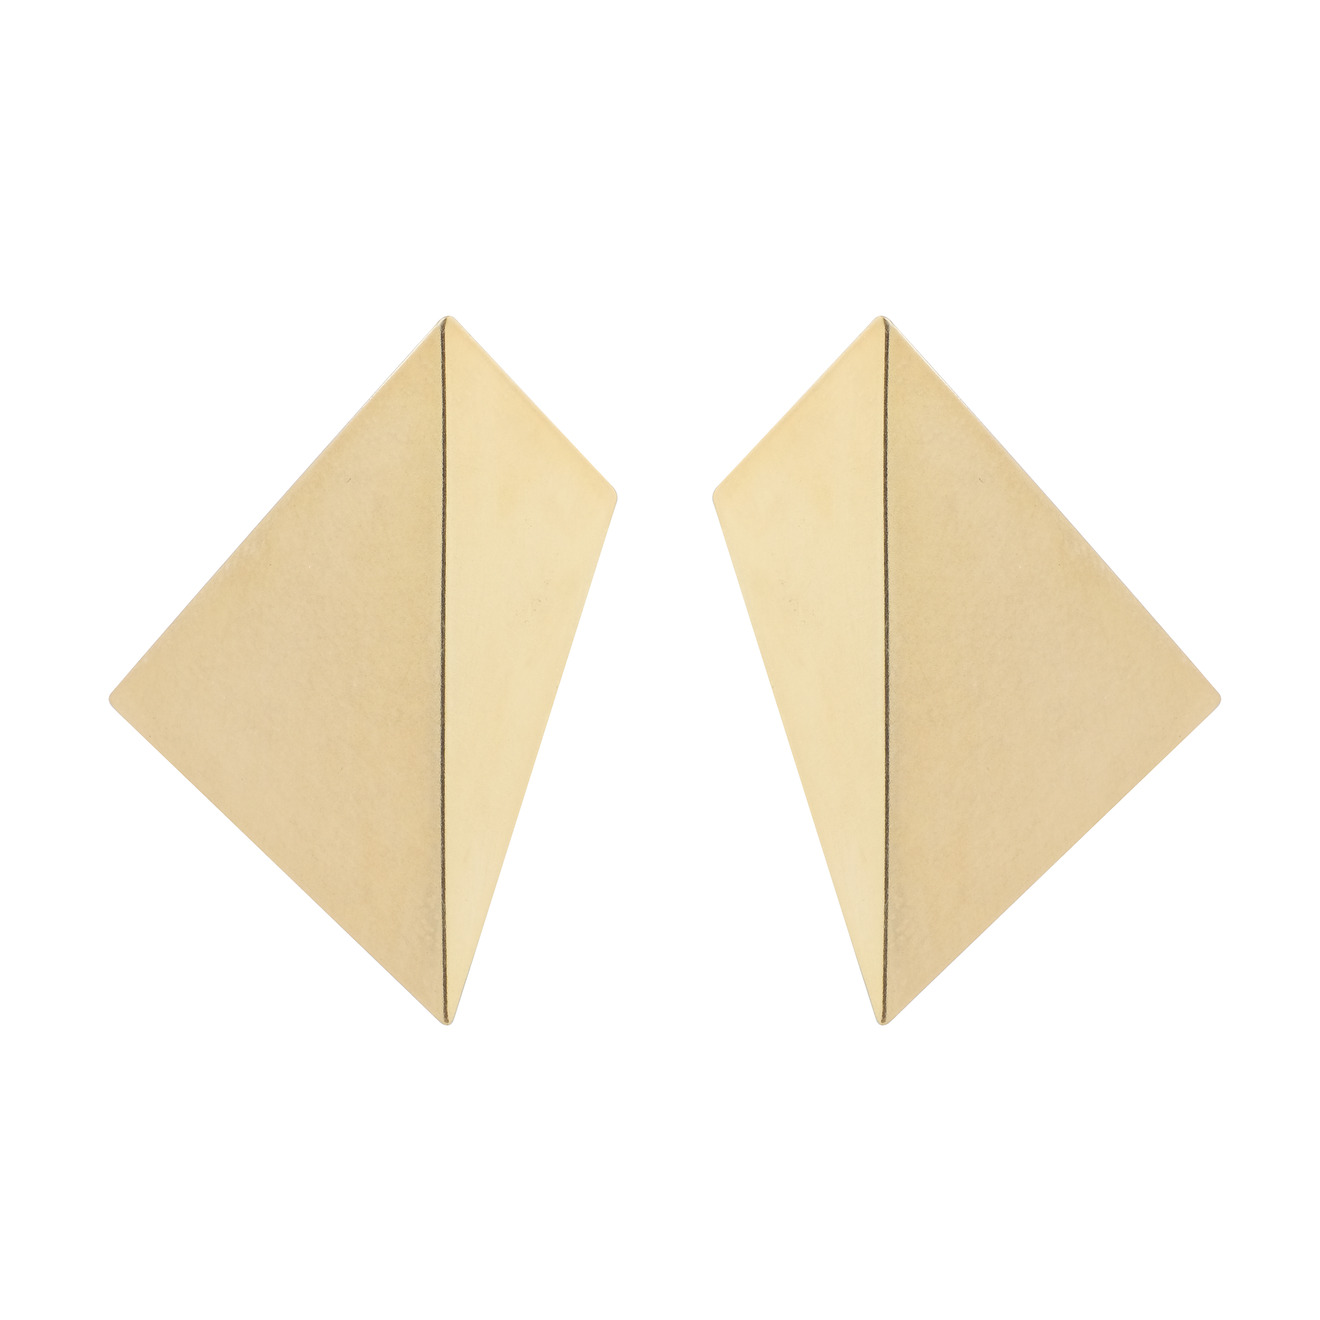 Khoshtrik Треугольные позолоченные серьги из серебра